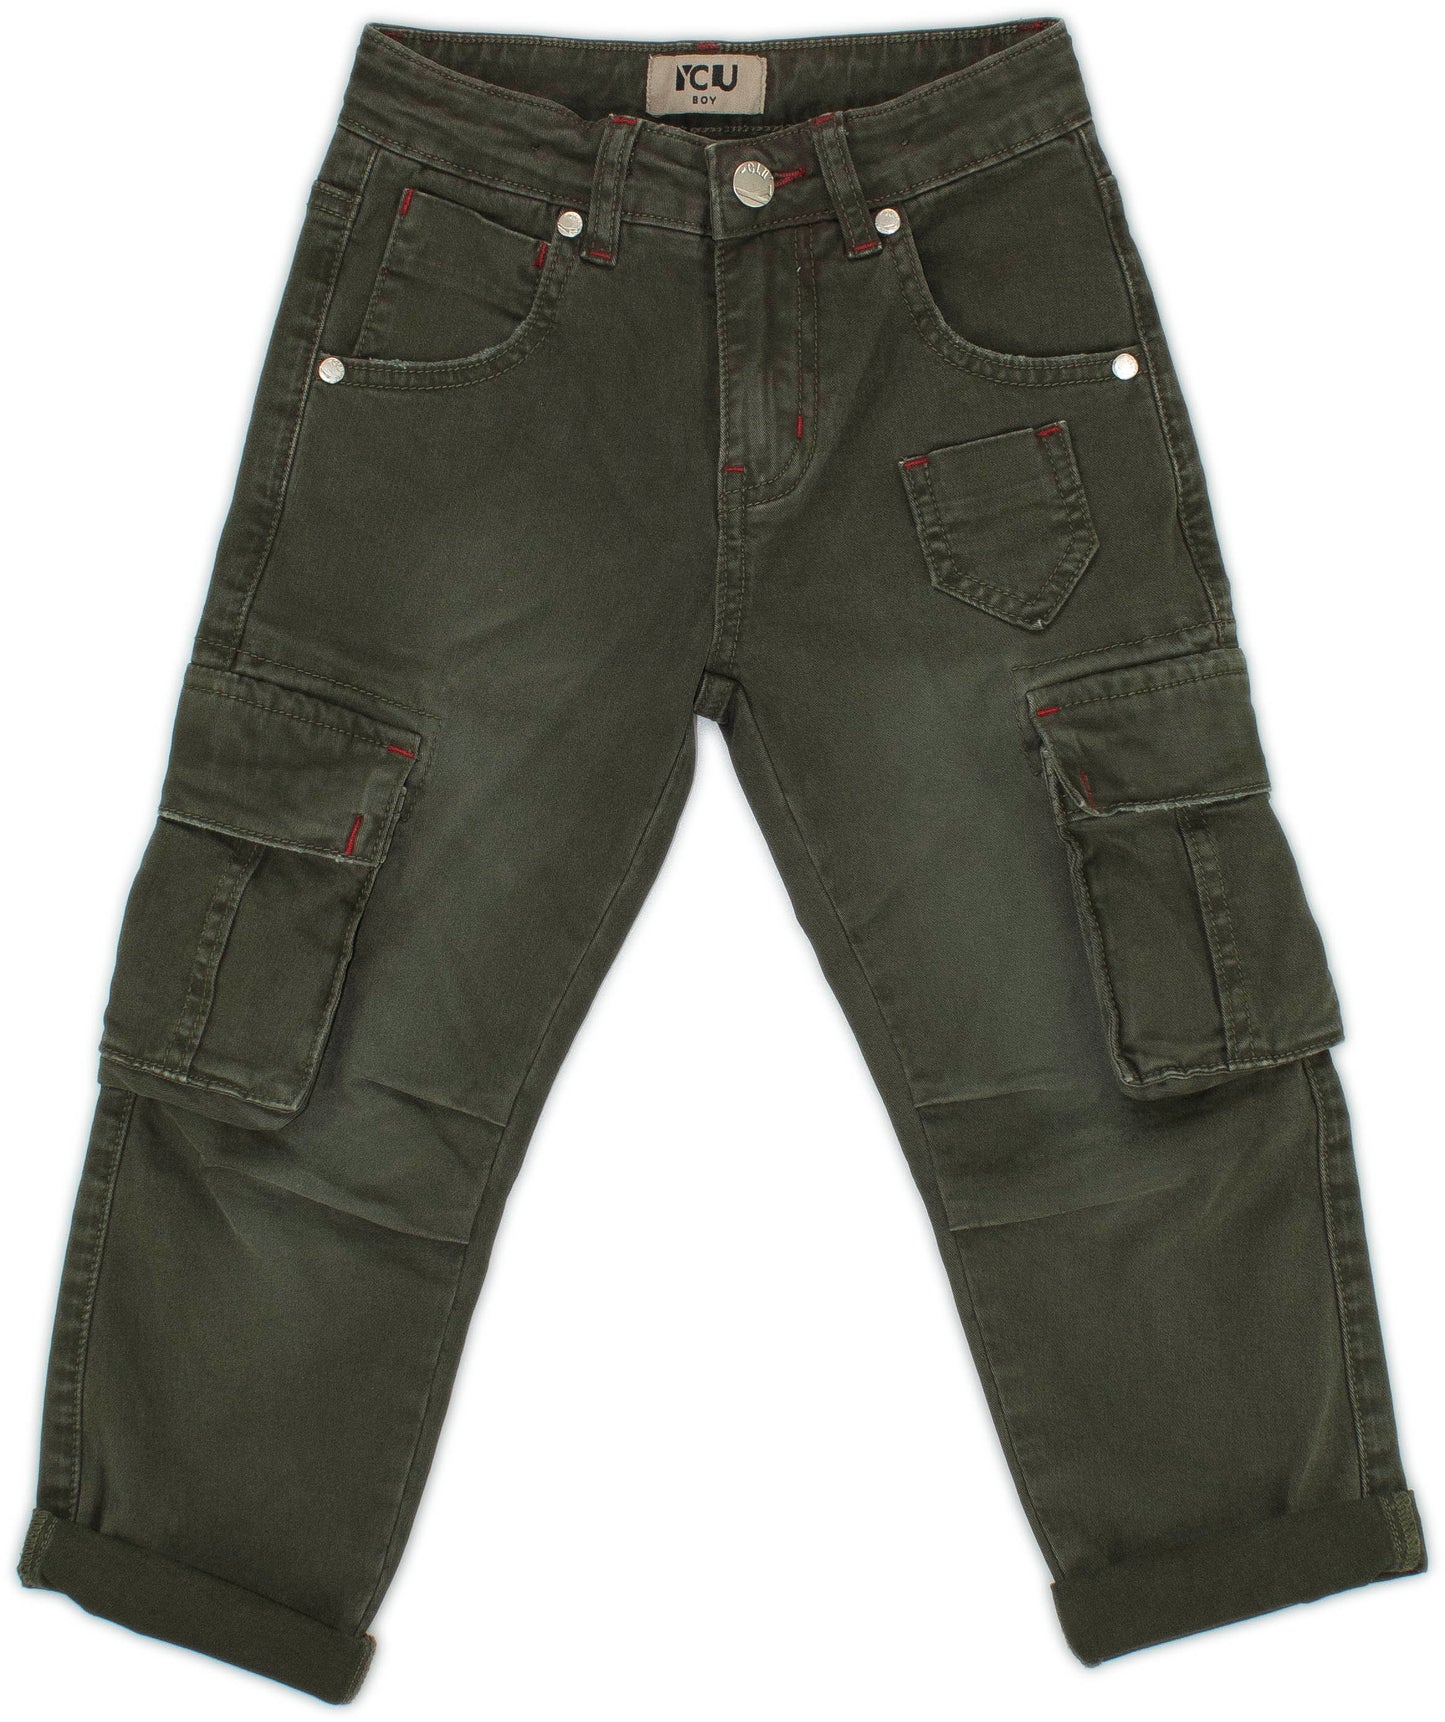 Pantalone con tasconi Verde Militare per bambino da 3anni a 7anni Y-Clù BYB10402